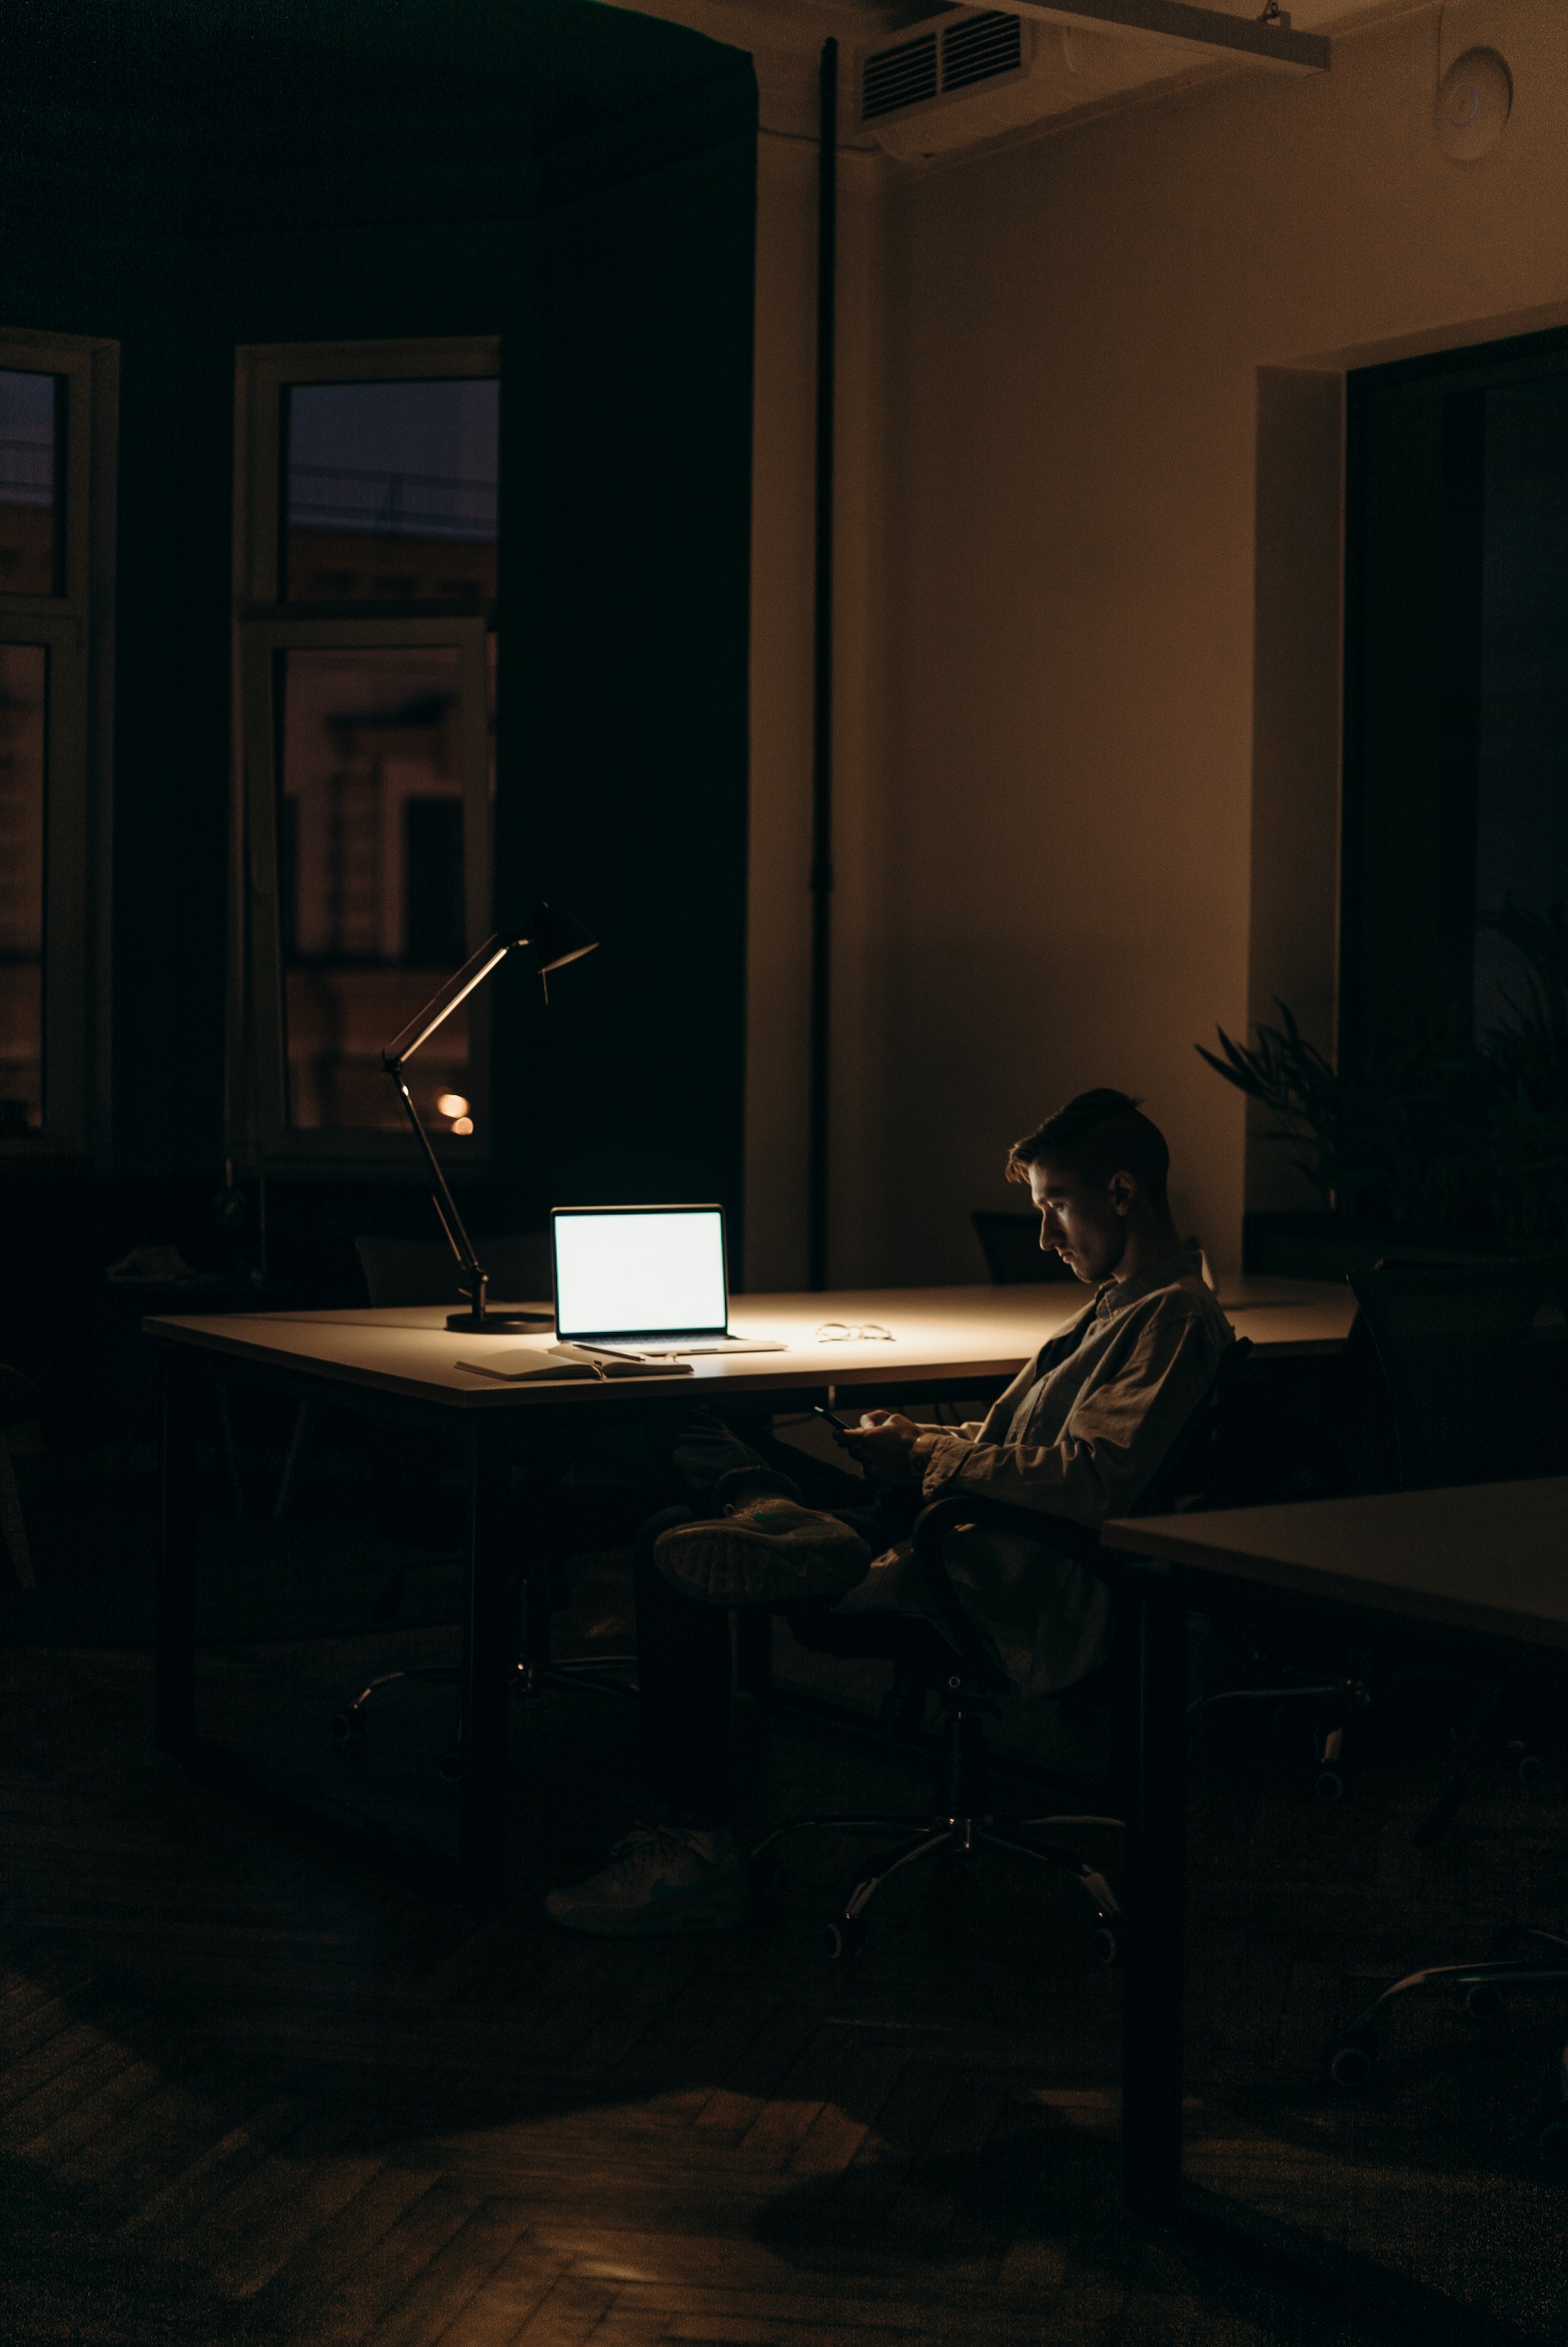 Un homme assis devant un ordinateur portable dans une pièce sombre | Source : Pexels